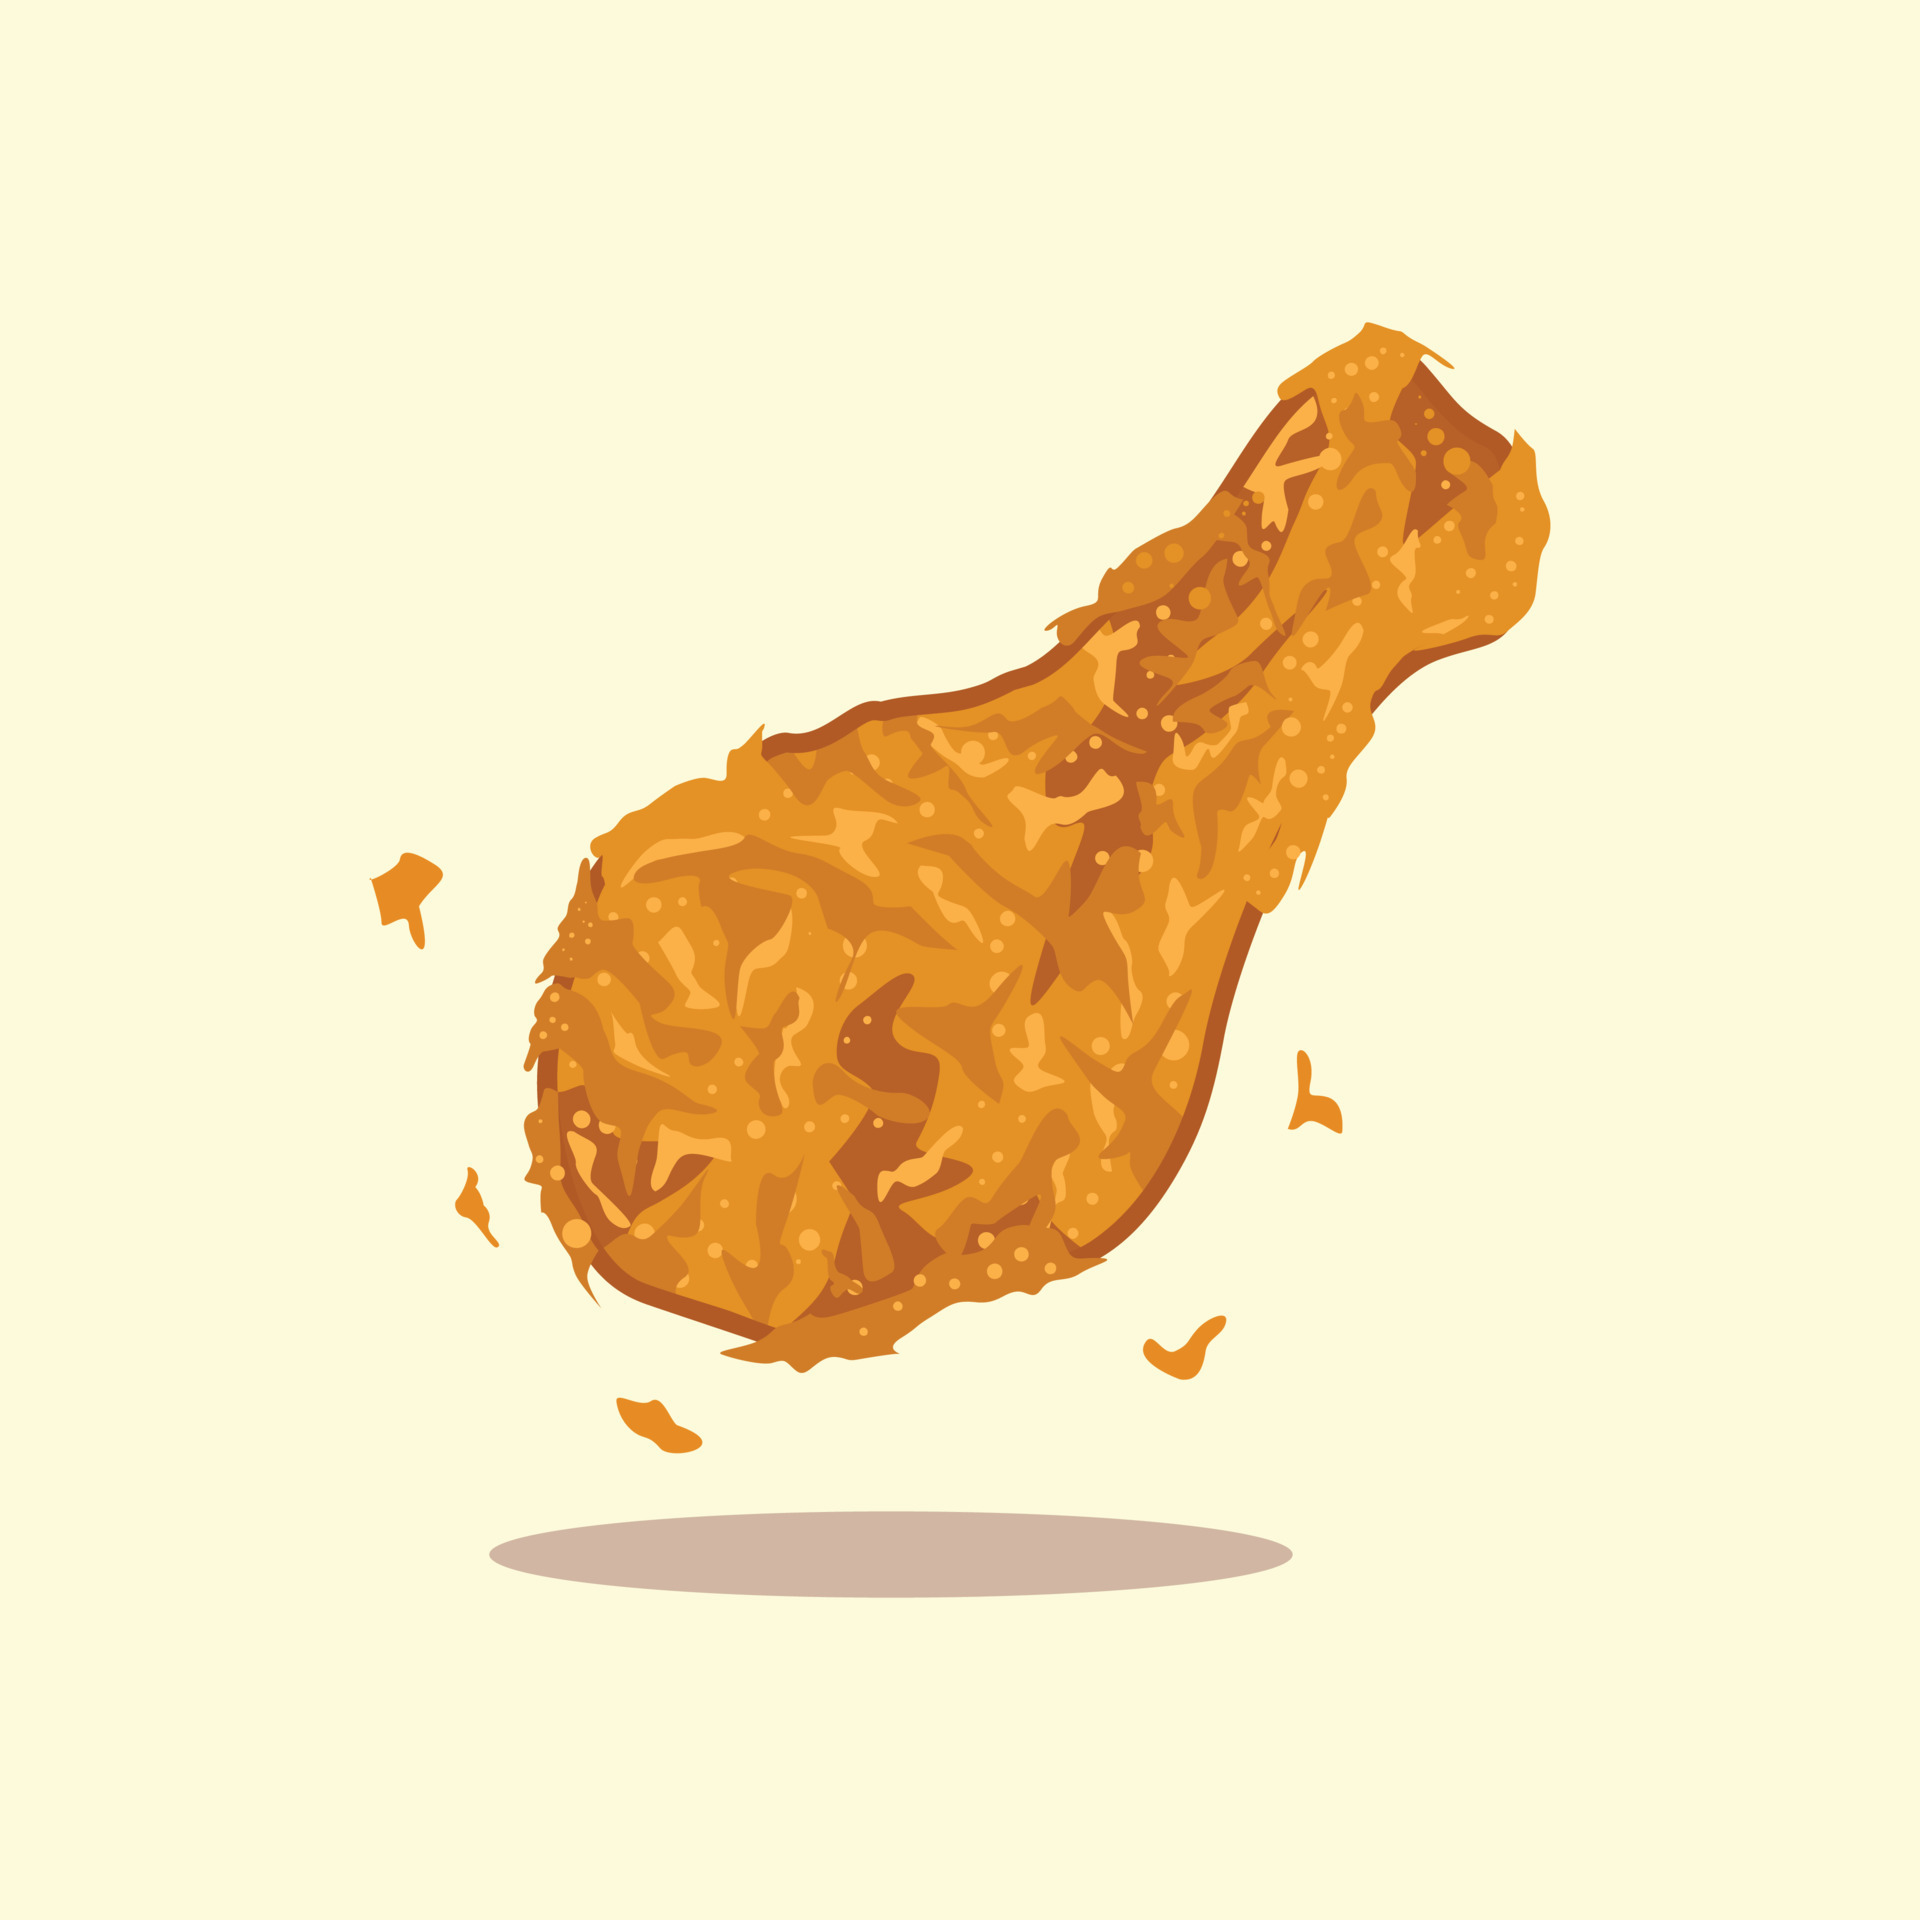 Crispy chicken thigh illustration cartoon design 16145928 Vector Art at ...